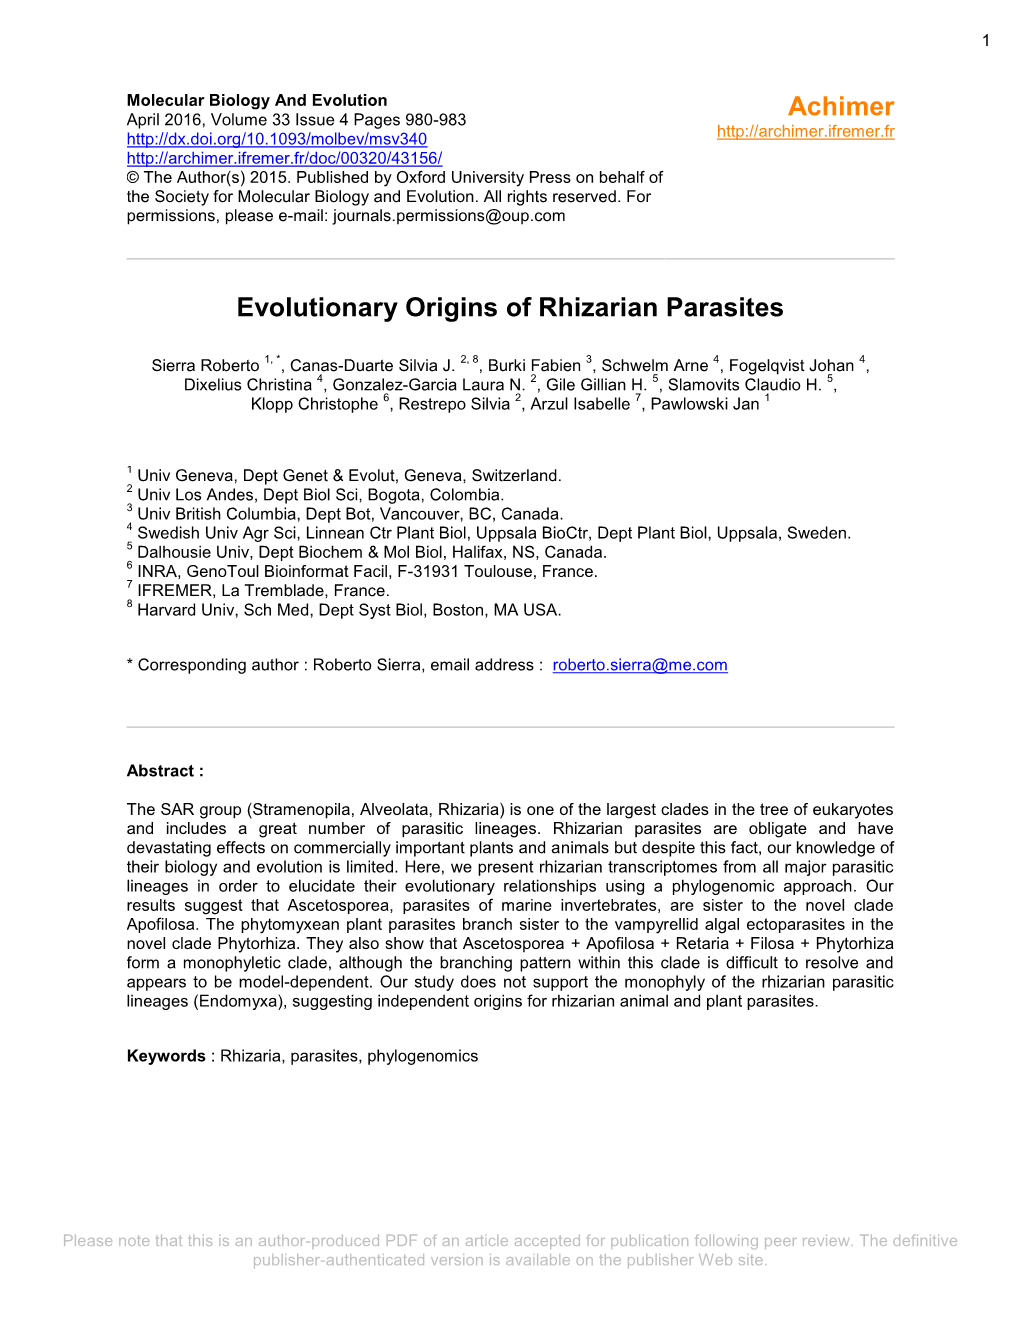 Evolutionary Origins of Rhizarian Parasites